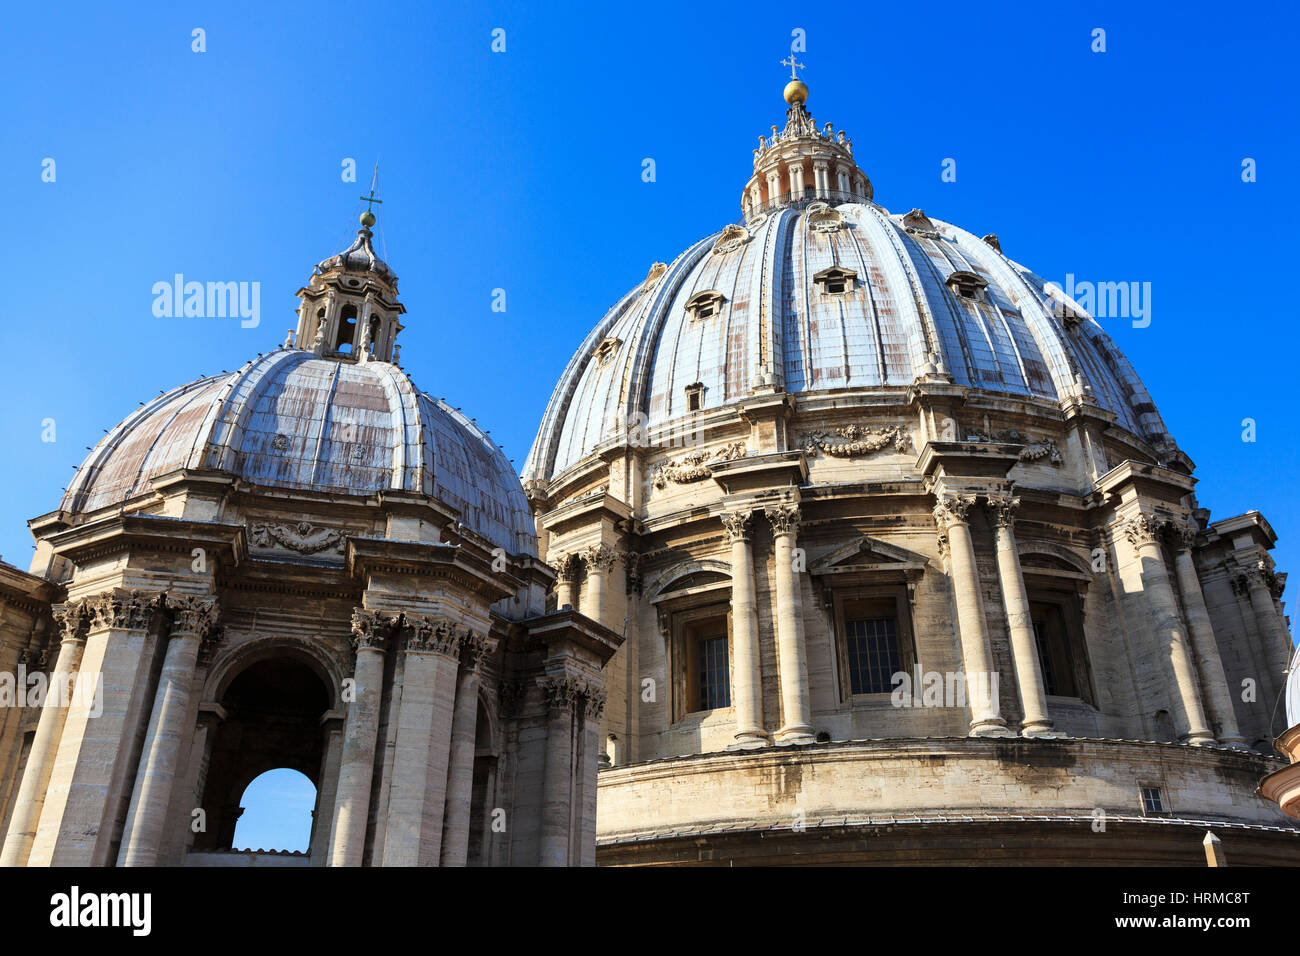 L'extérieur de l'Capola dome, St Peters Basilica, Cité du Vatican, Rome, Italie Banque D'Images